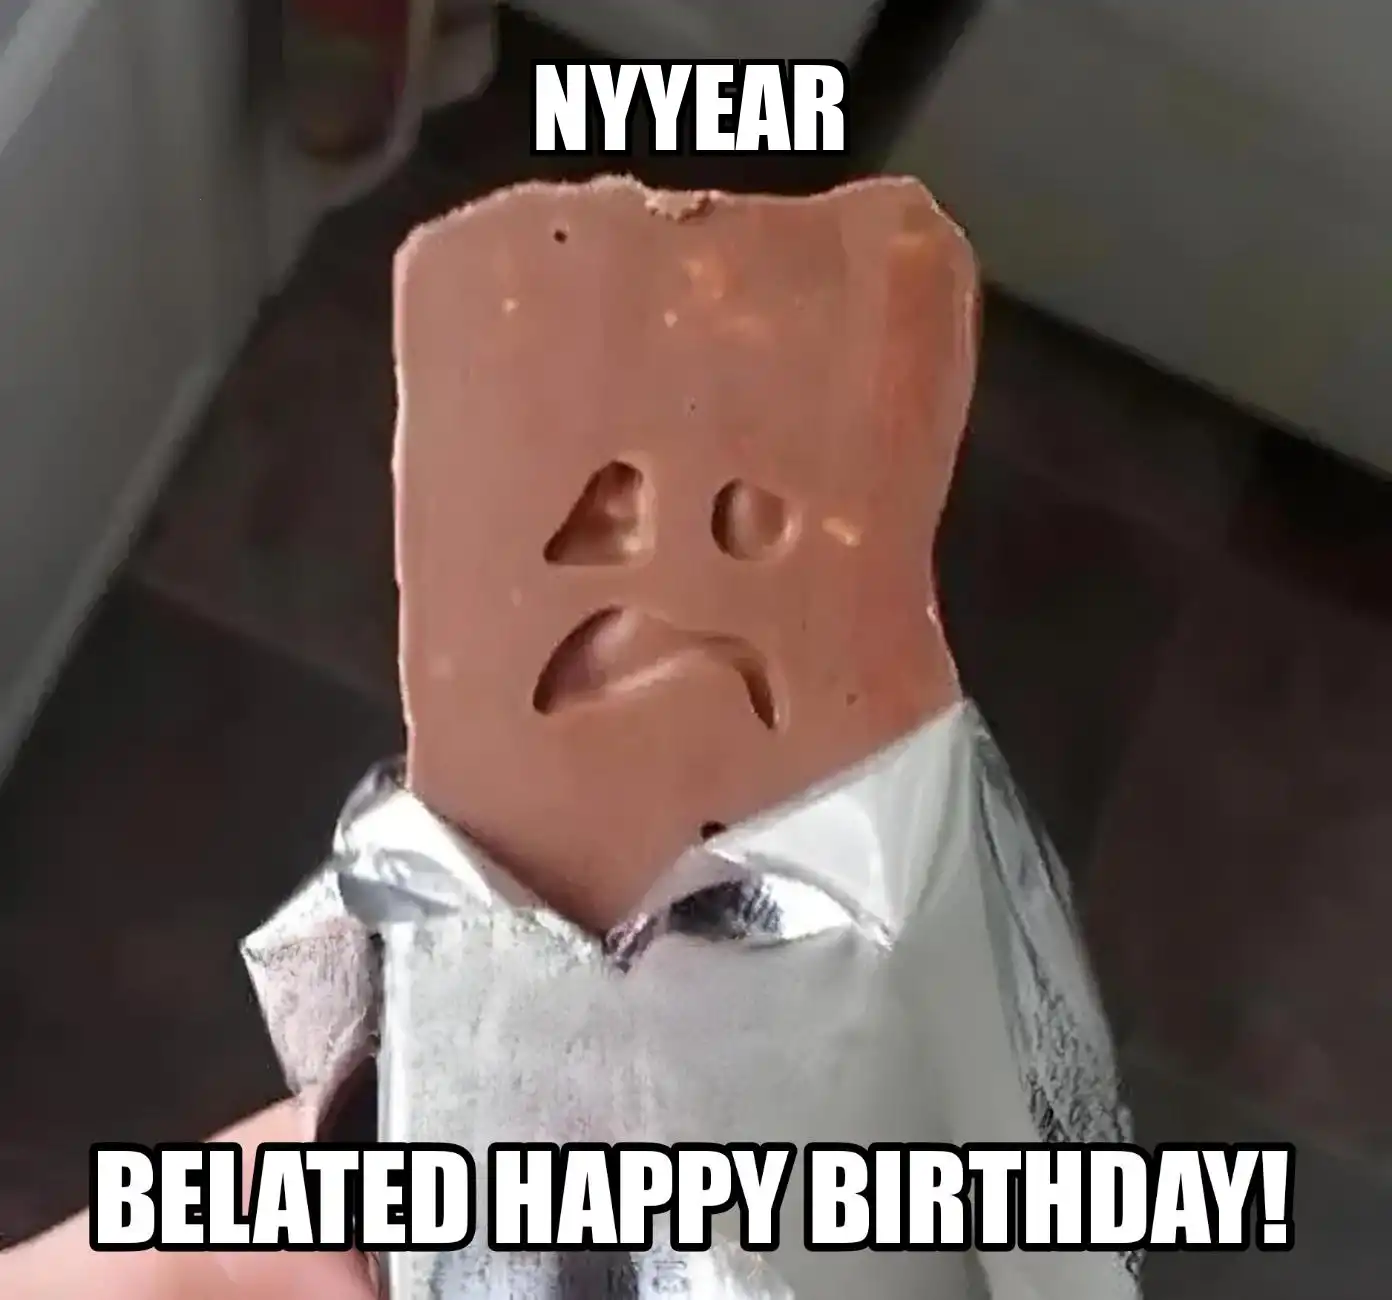 Happy Birthday Nyyear Belated Happy Birthday Meme